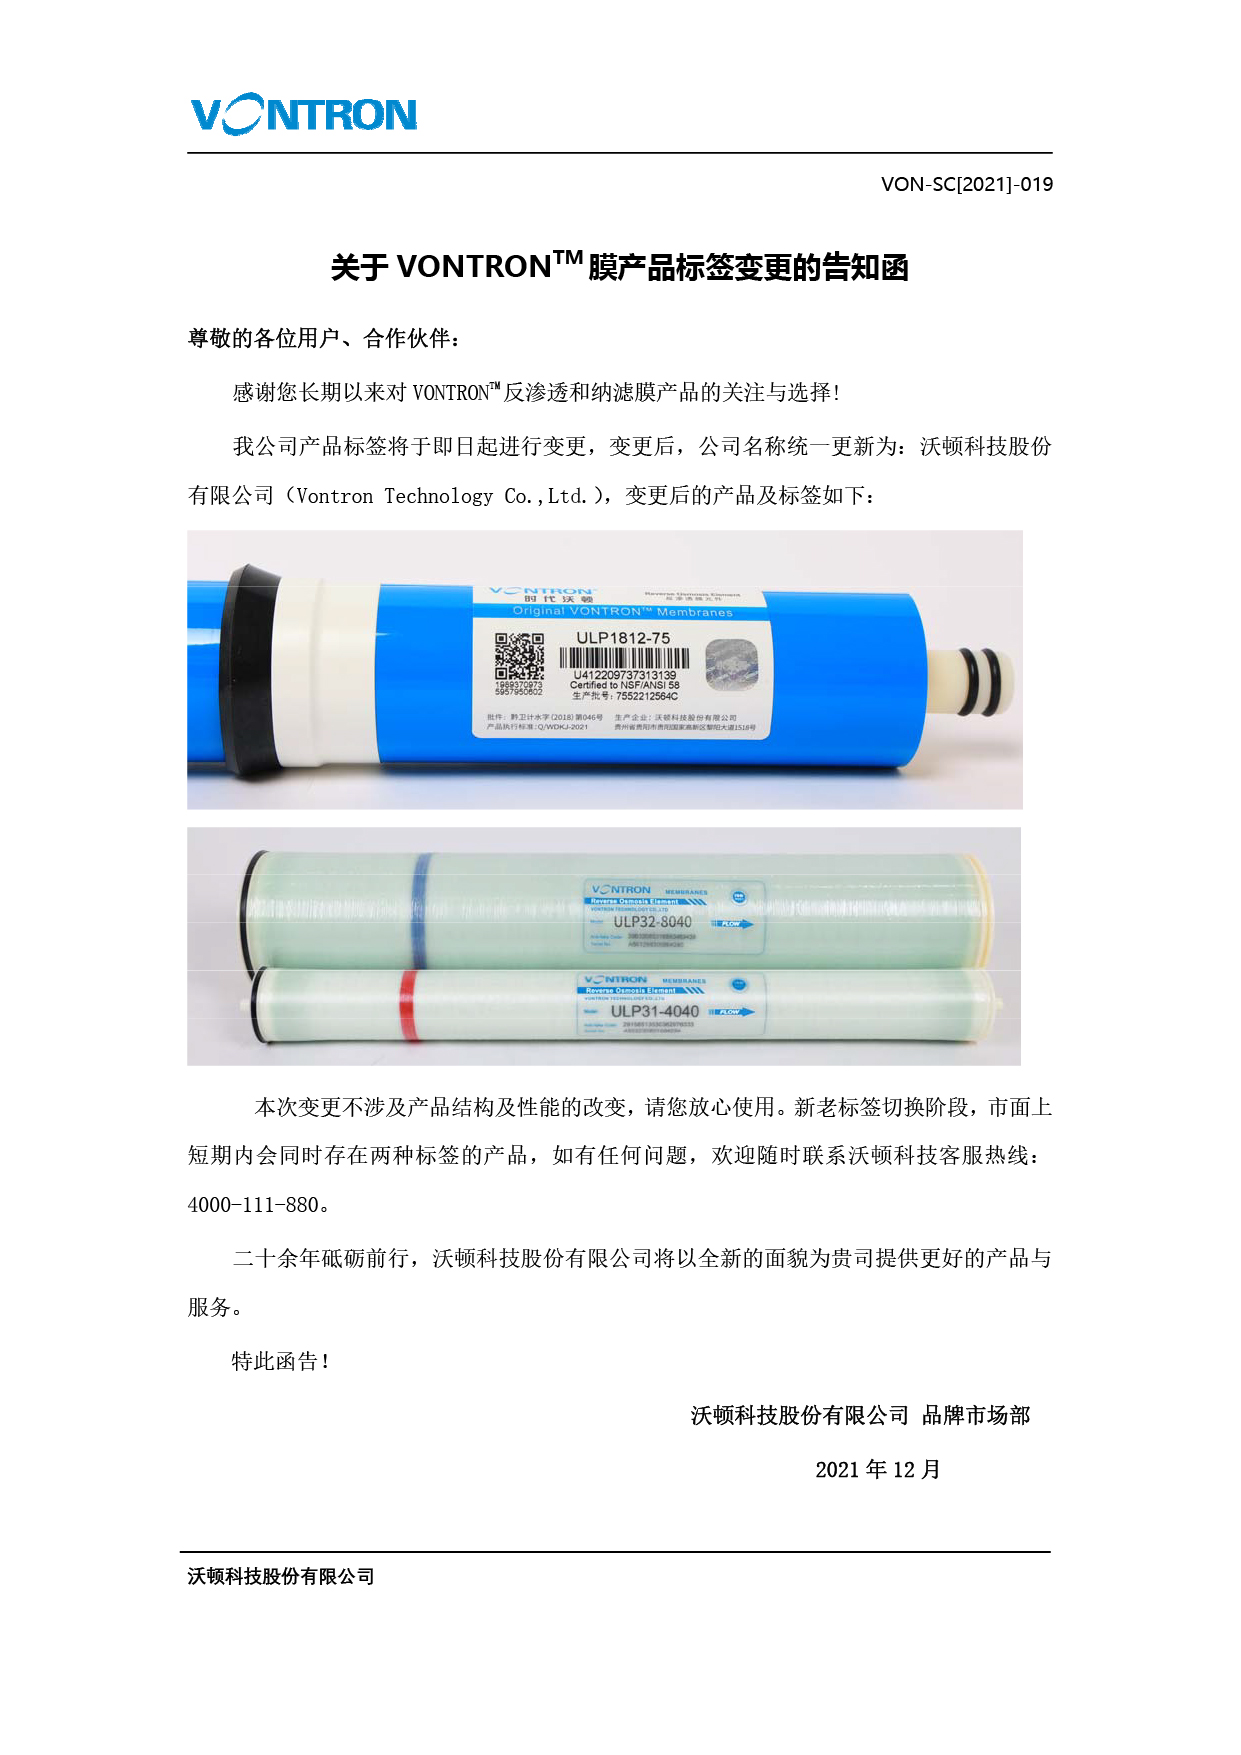 关于jinnianhui67膜产品标签变更的告知函